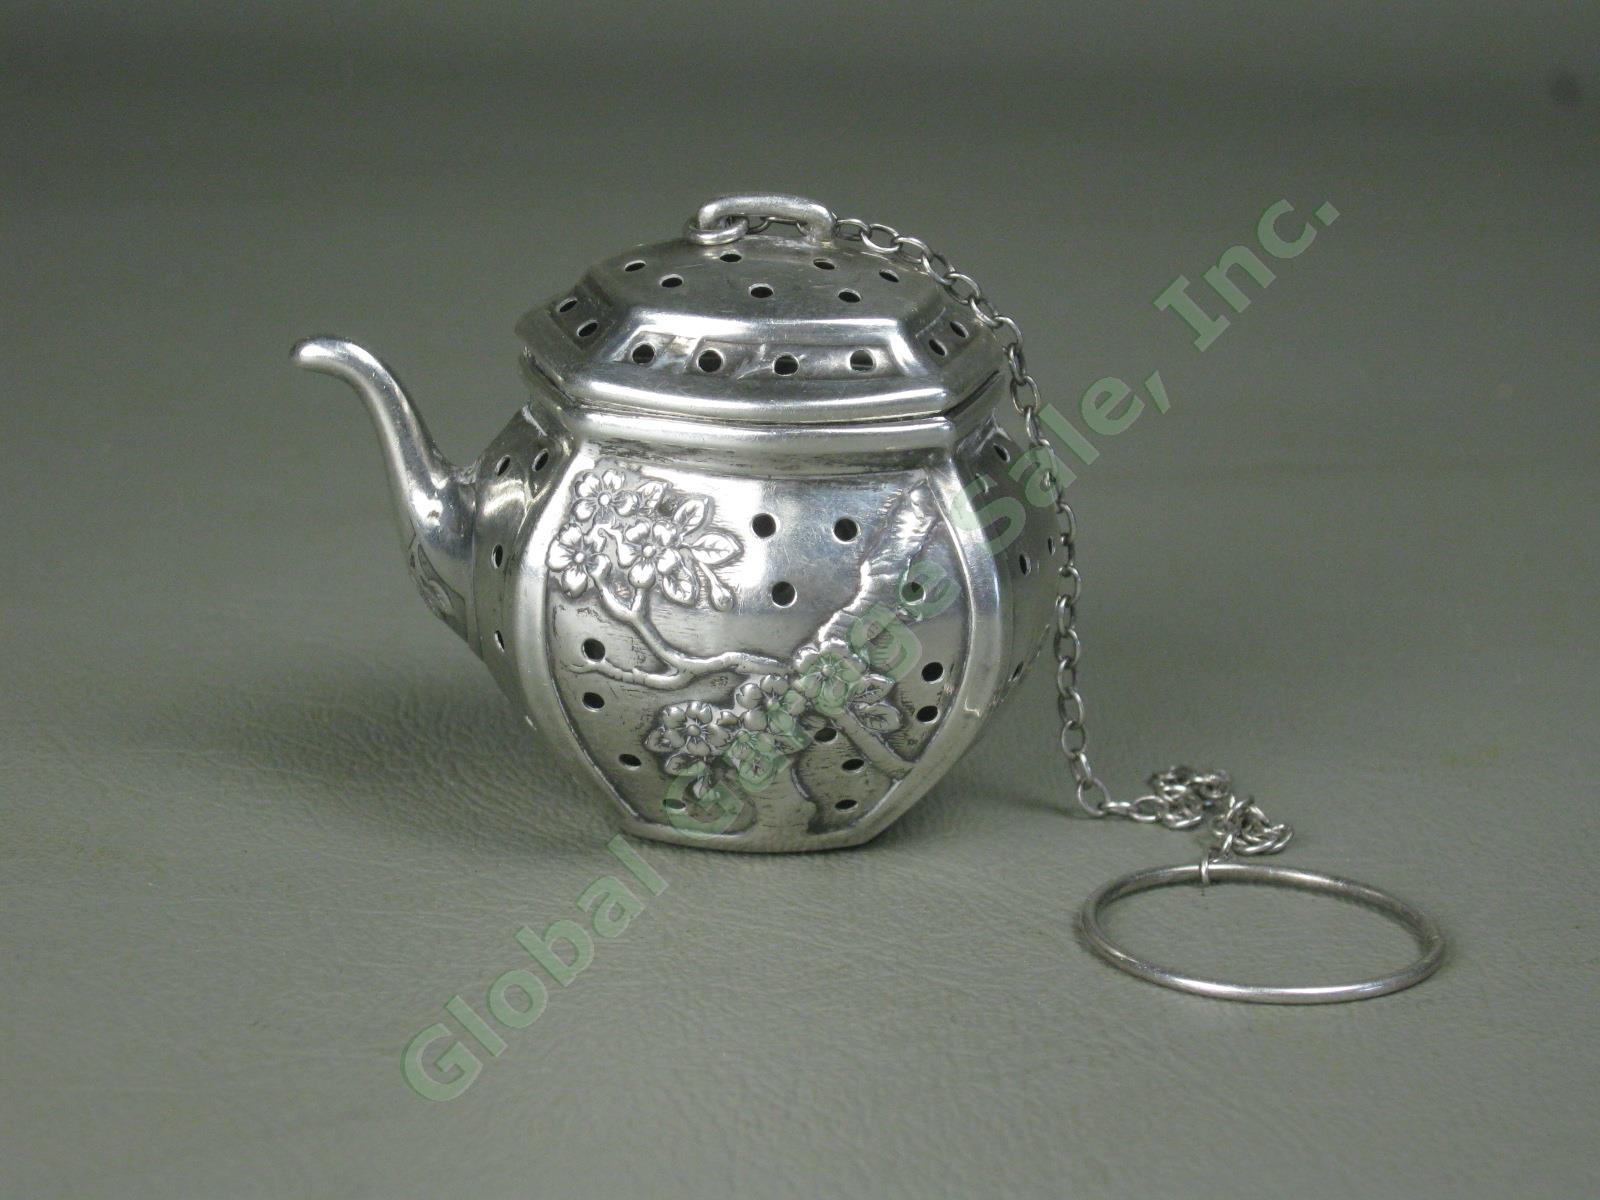 Vtg Antique Cartier Sterling Silver Teapot Tea Strainer Infuser Floral Designs